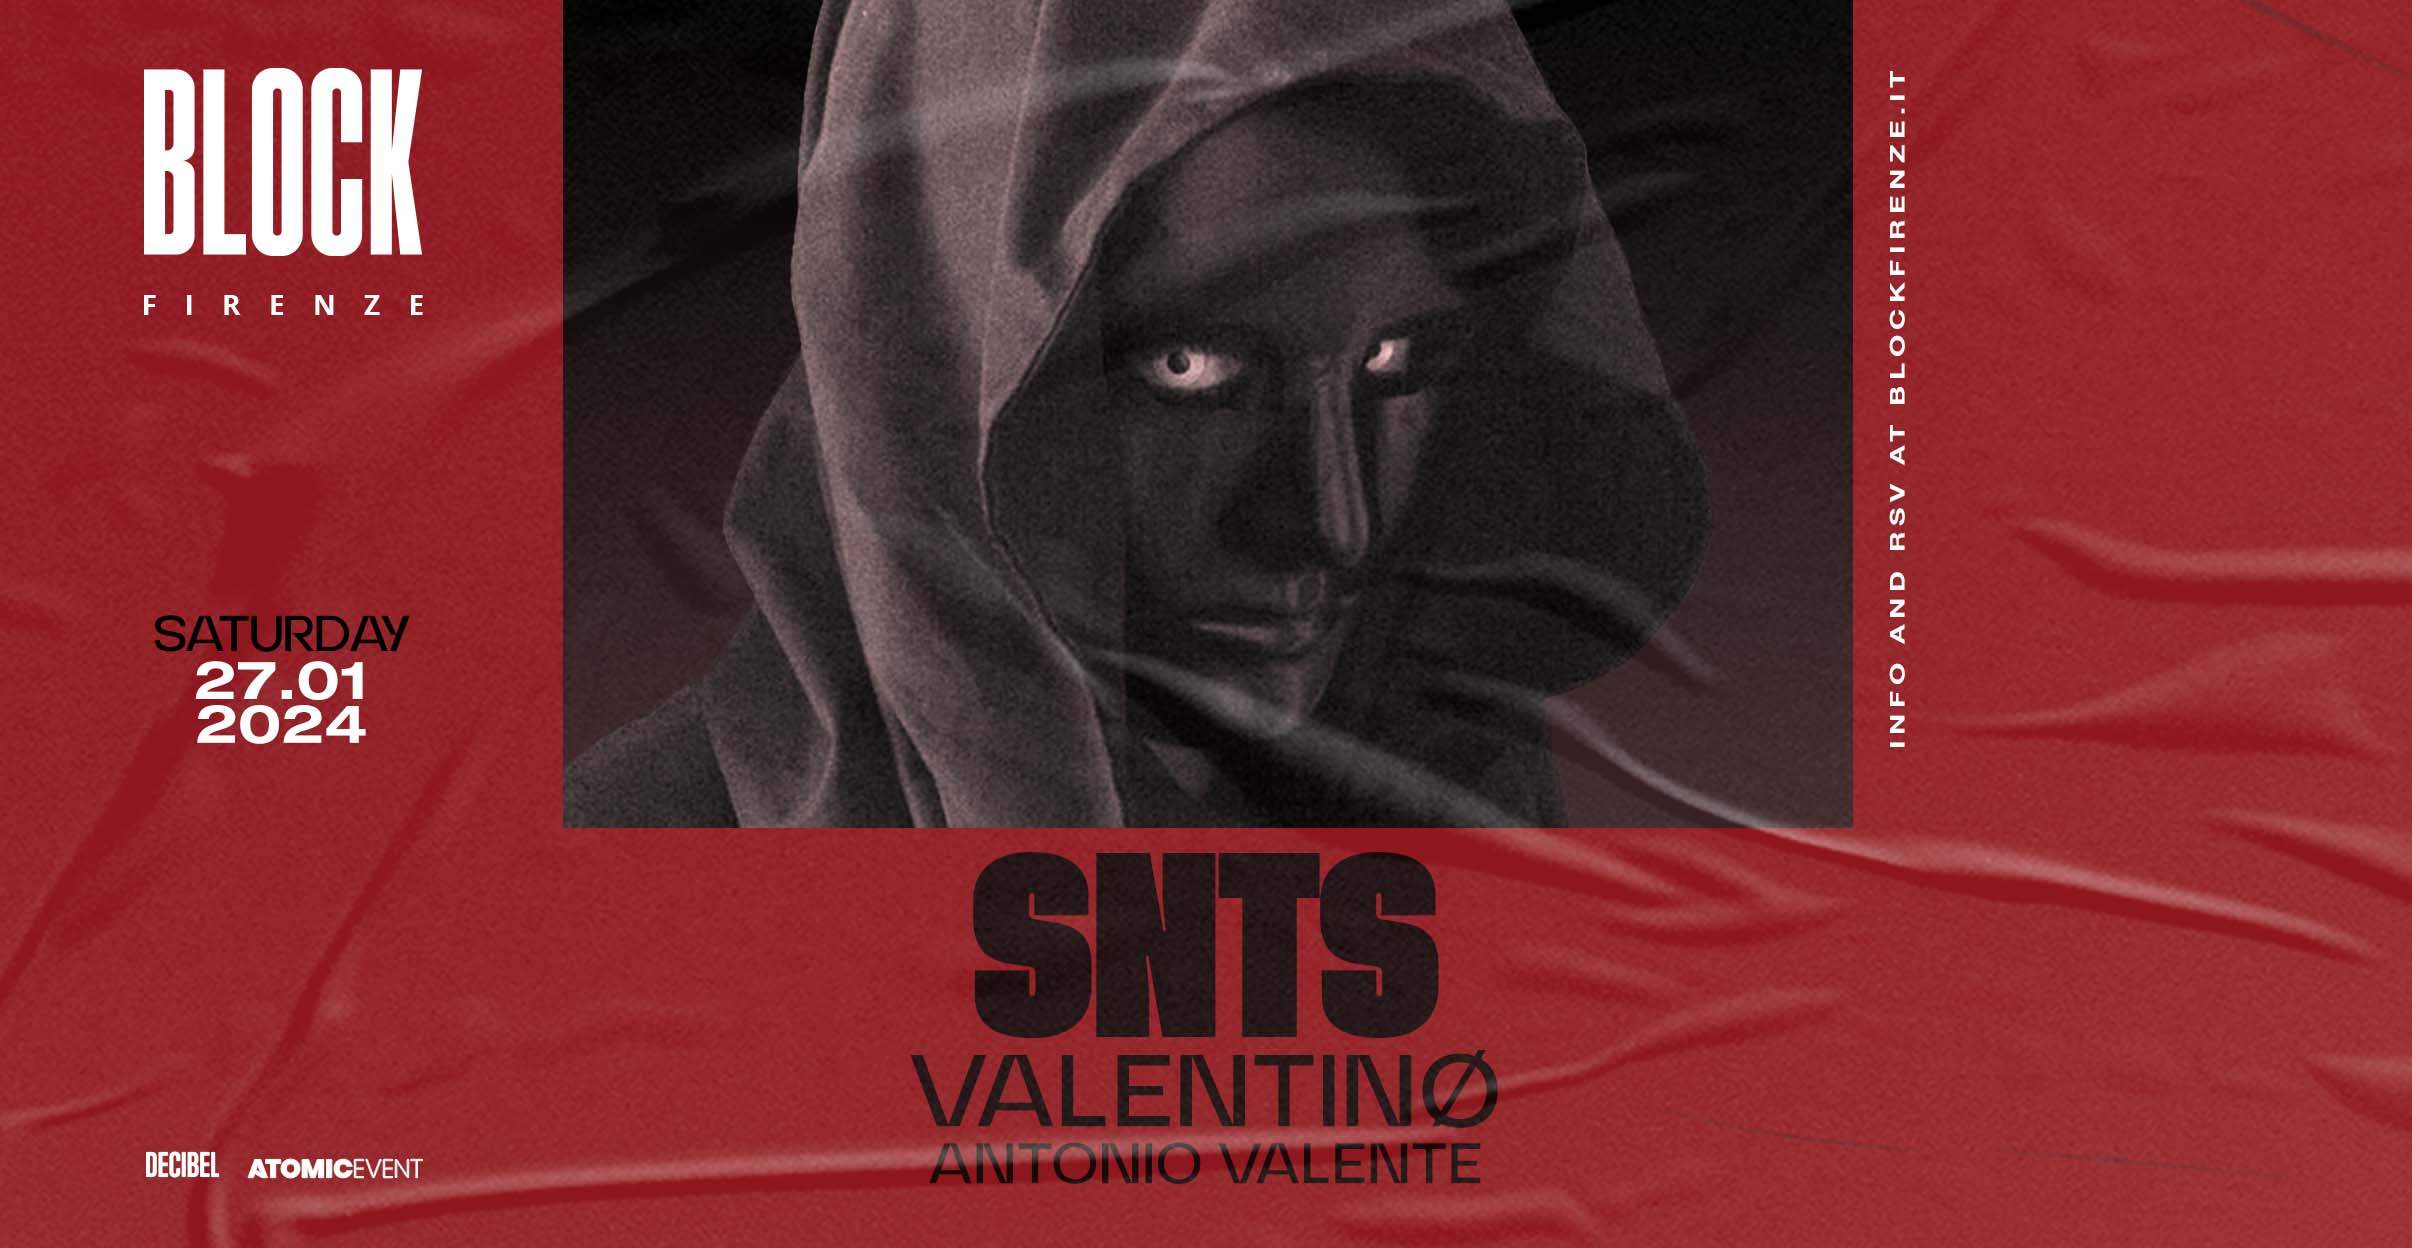 SNTS + Valentinø + Antonio Valente - Página frontal